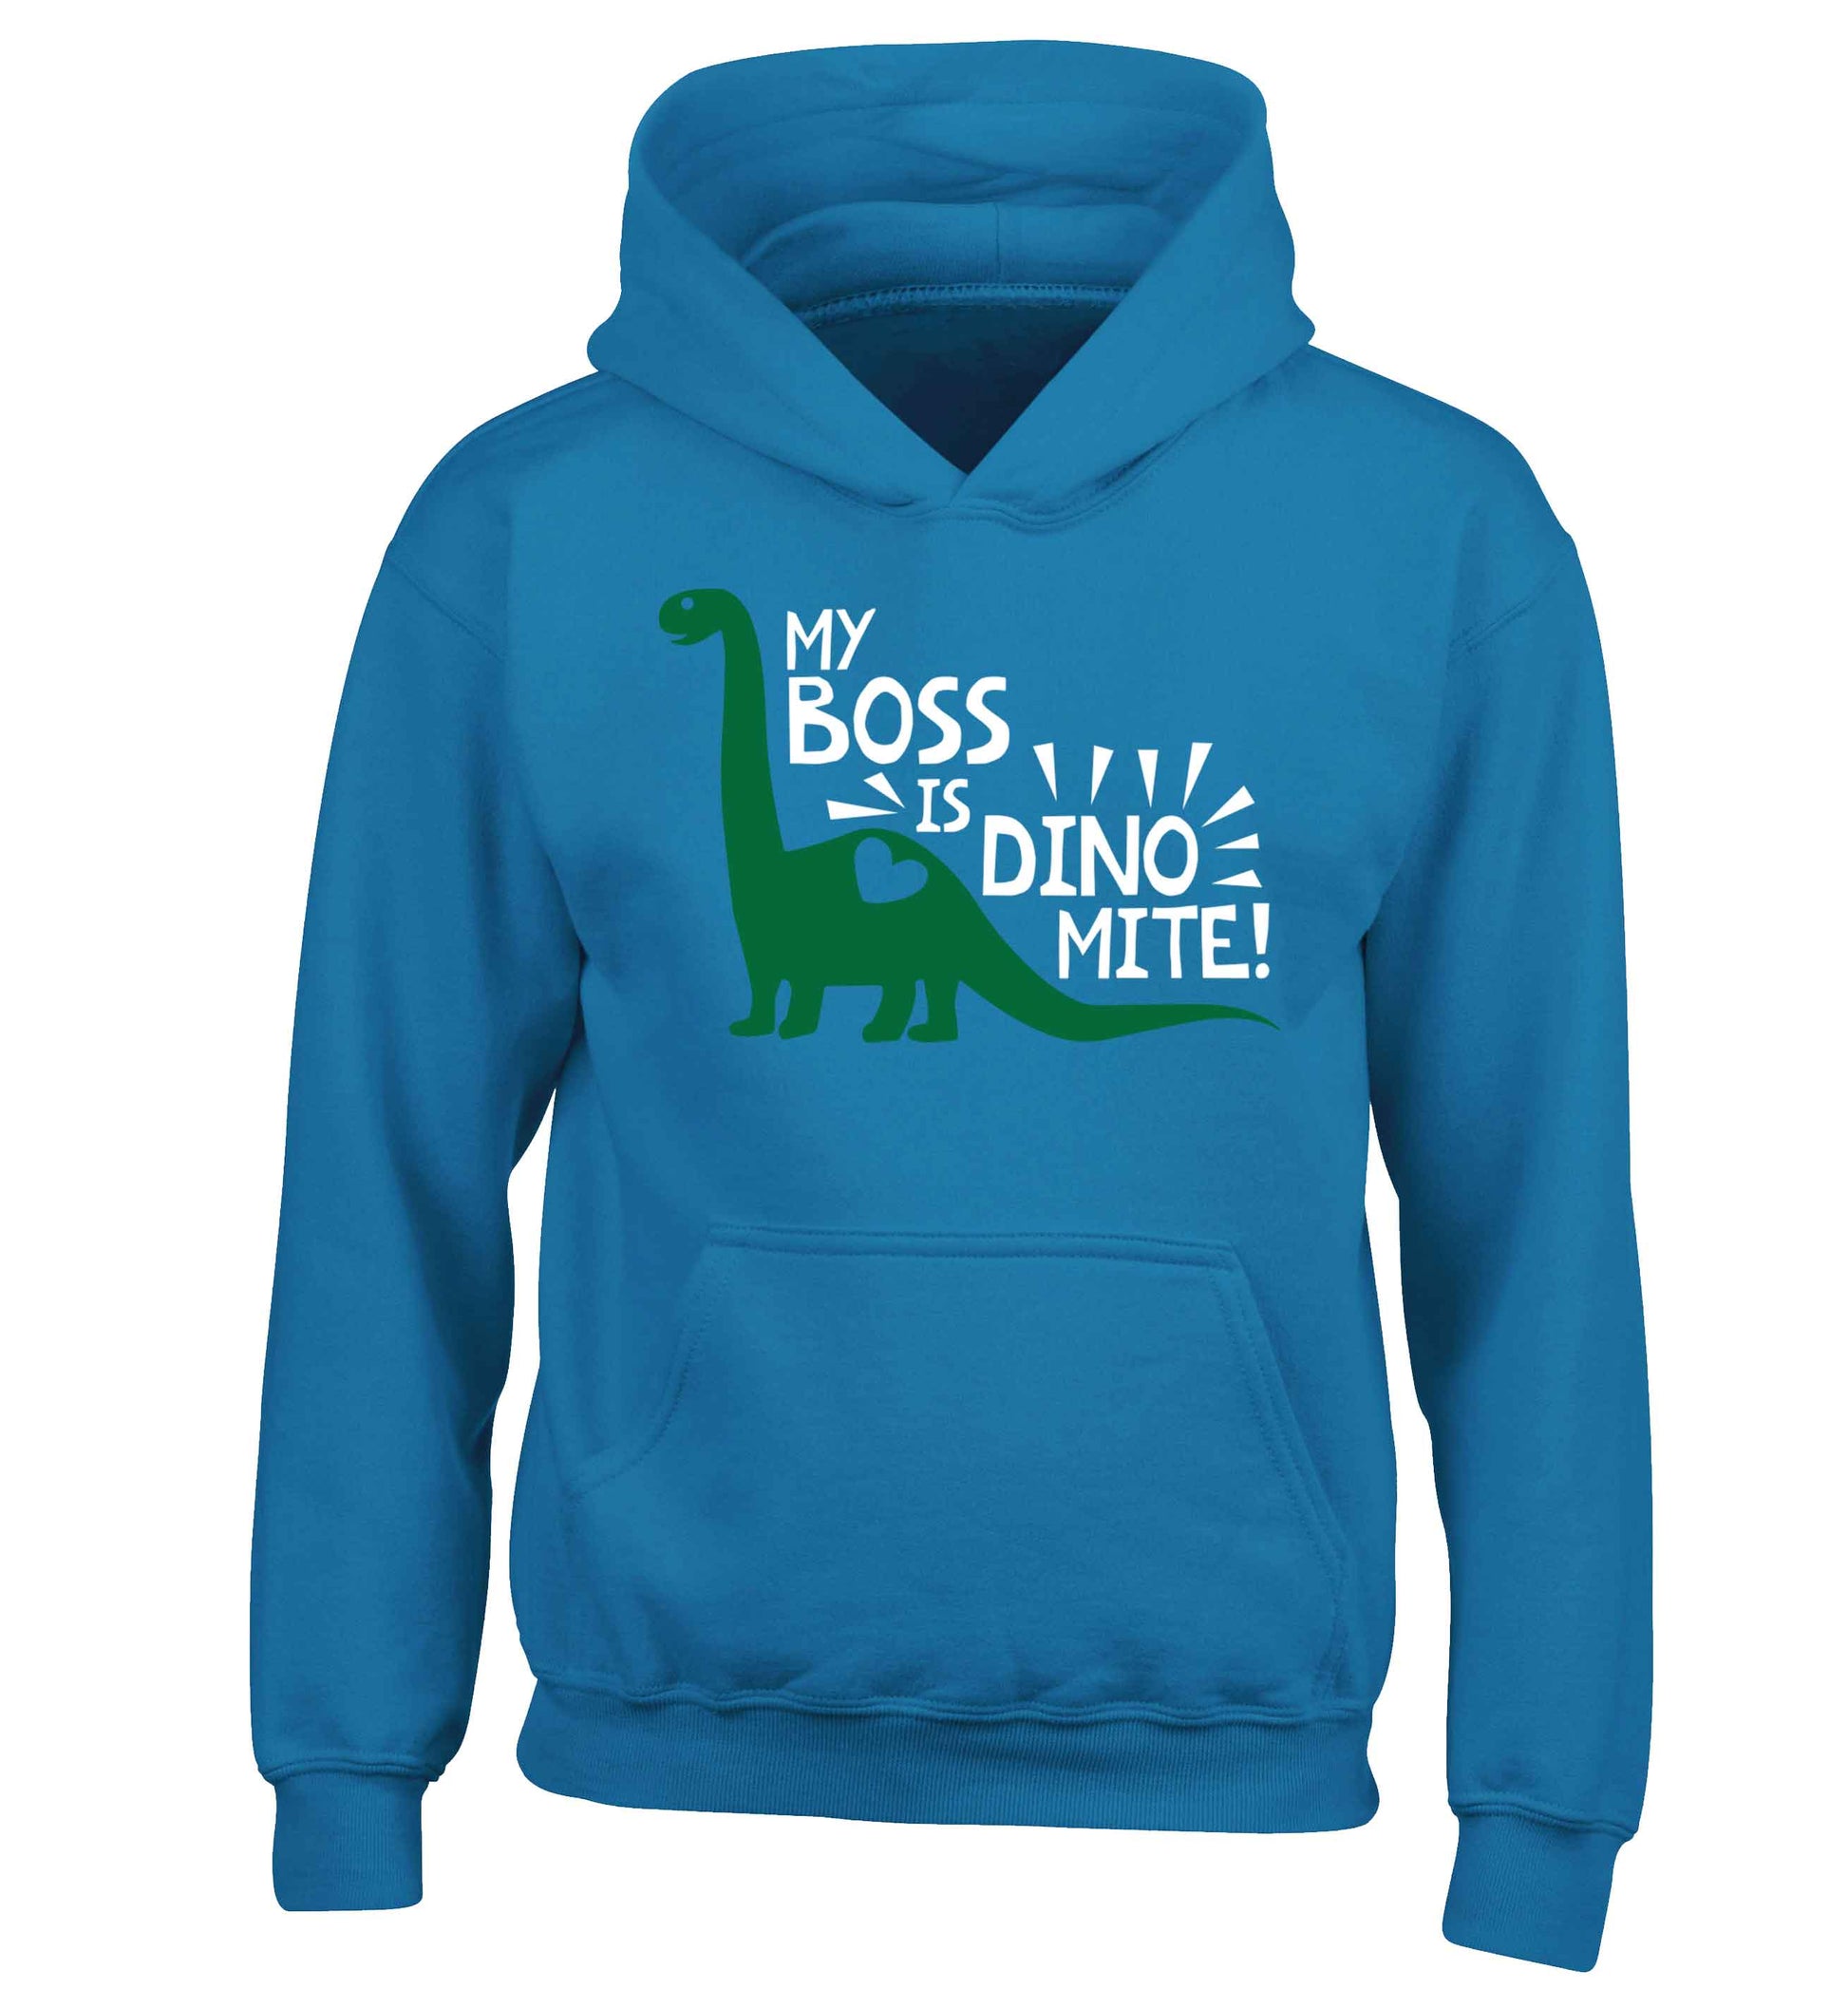 My boss is dinomite! children's blue hoodie 12-13 Years